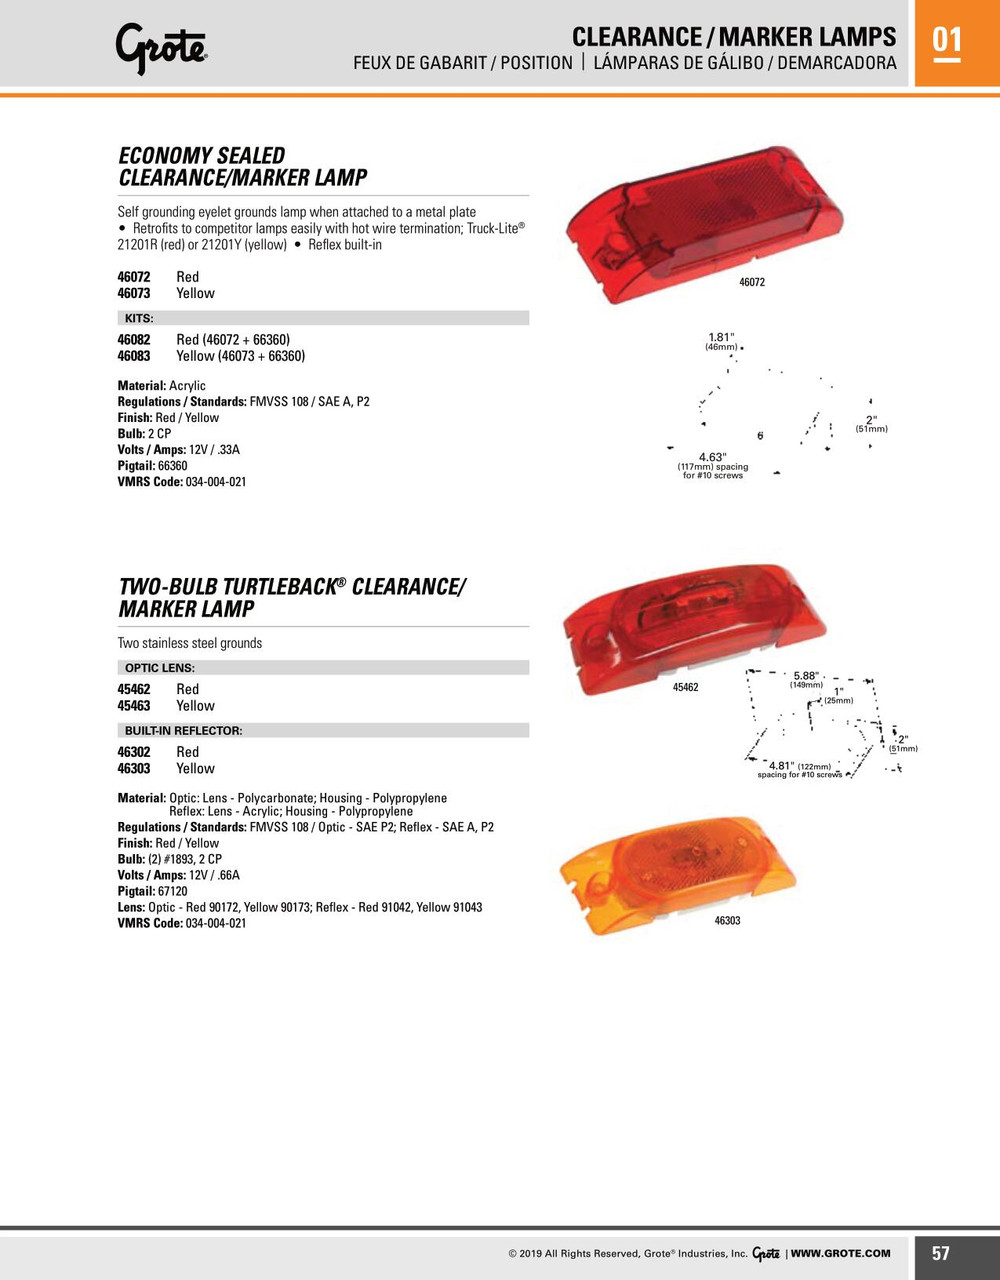 Economy Sealed LED Clearance/Marker Lamp Kit (46073 + 66360) - Amber  46083